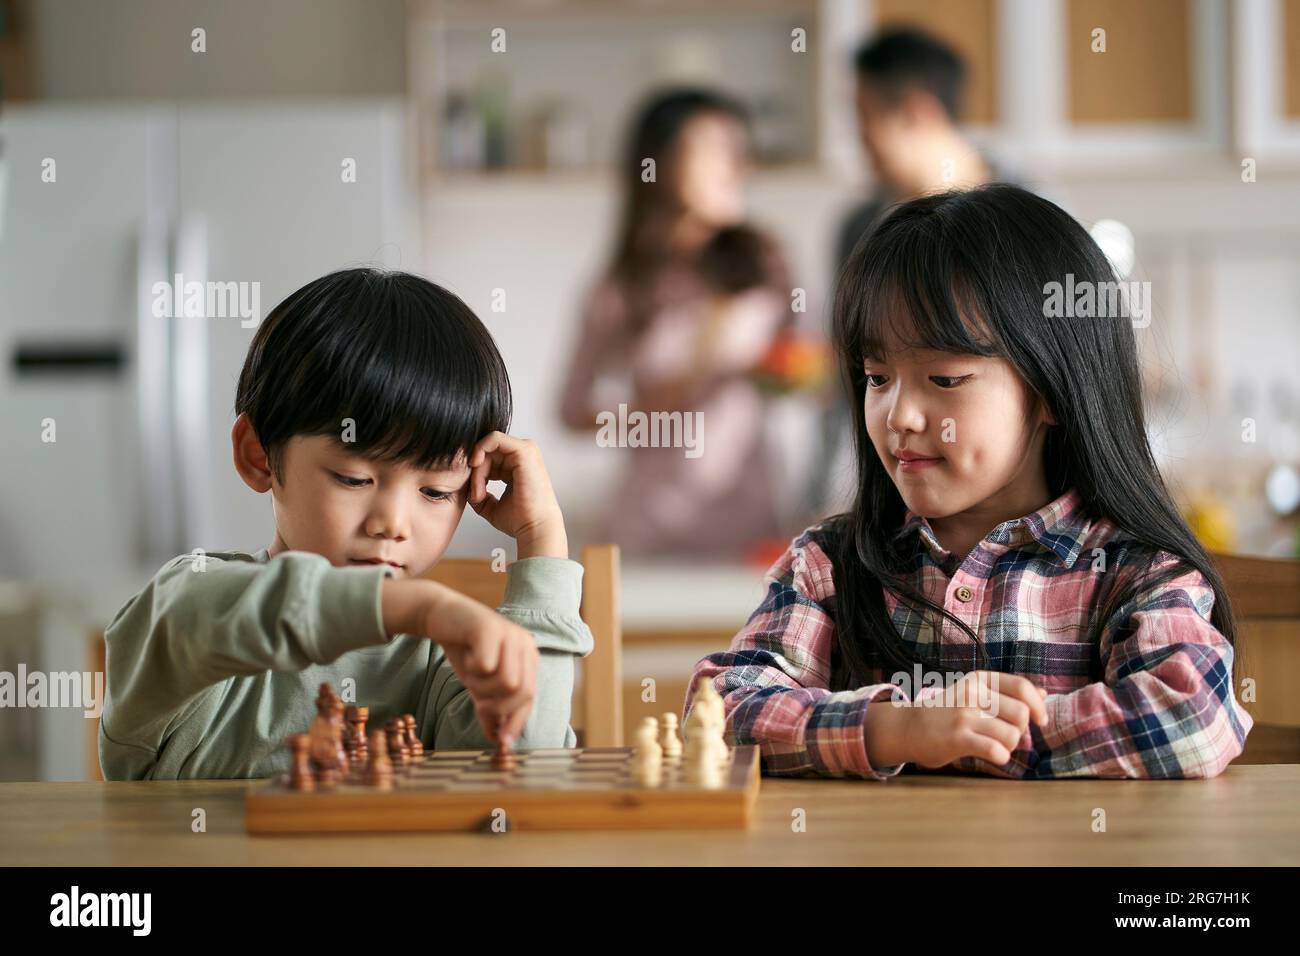 deux enfants asiatiques frère et sœur assis à table à la maison jouant aux échecs Banque D'Images